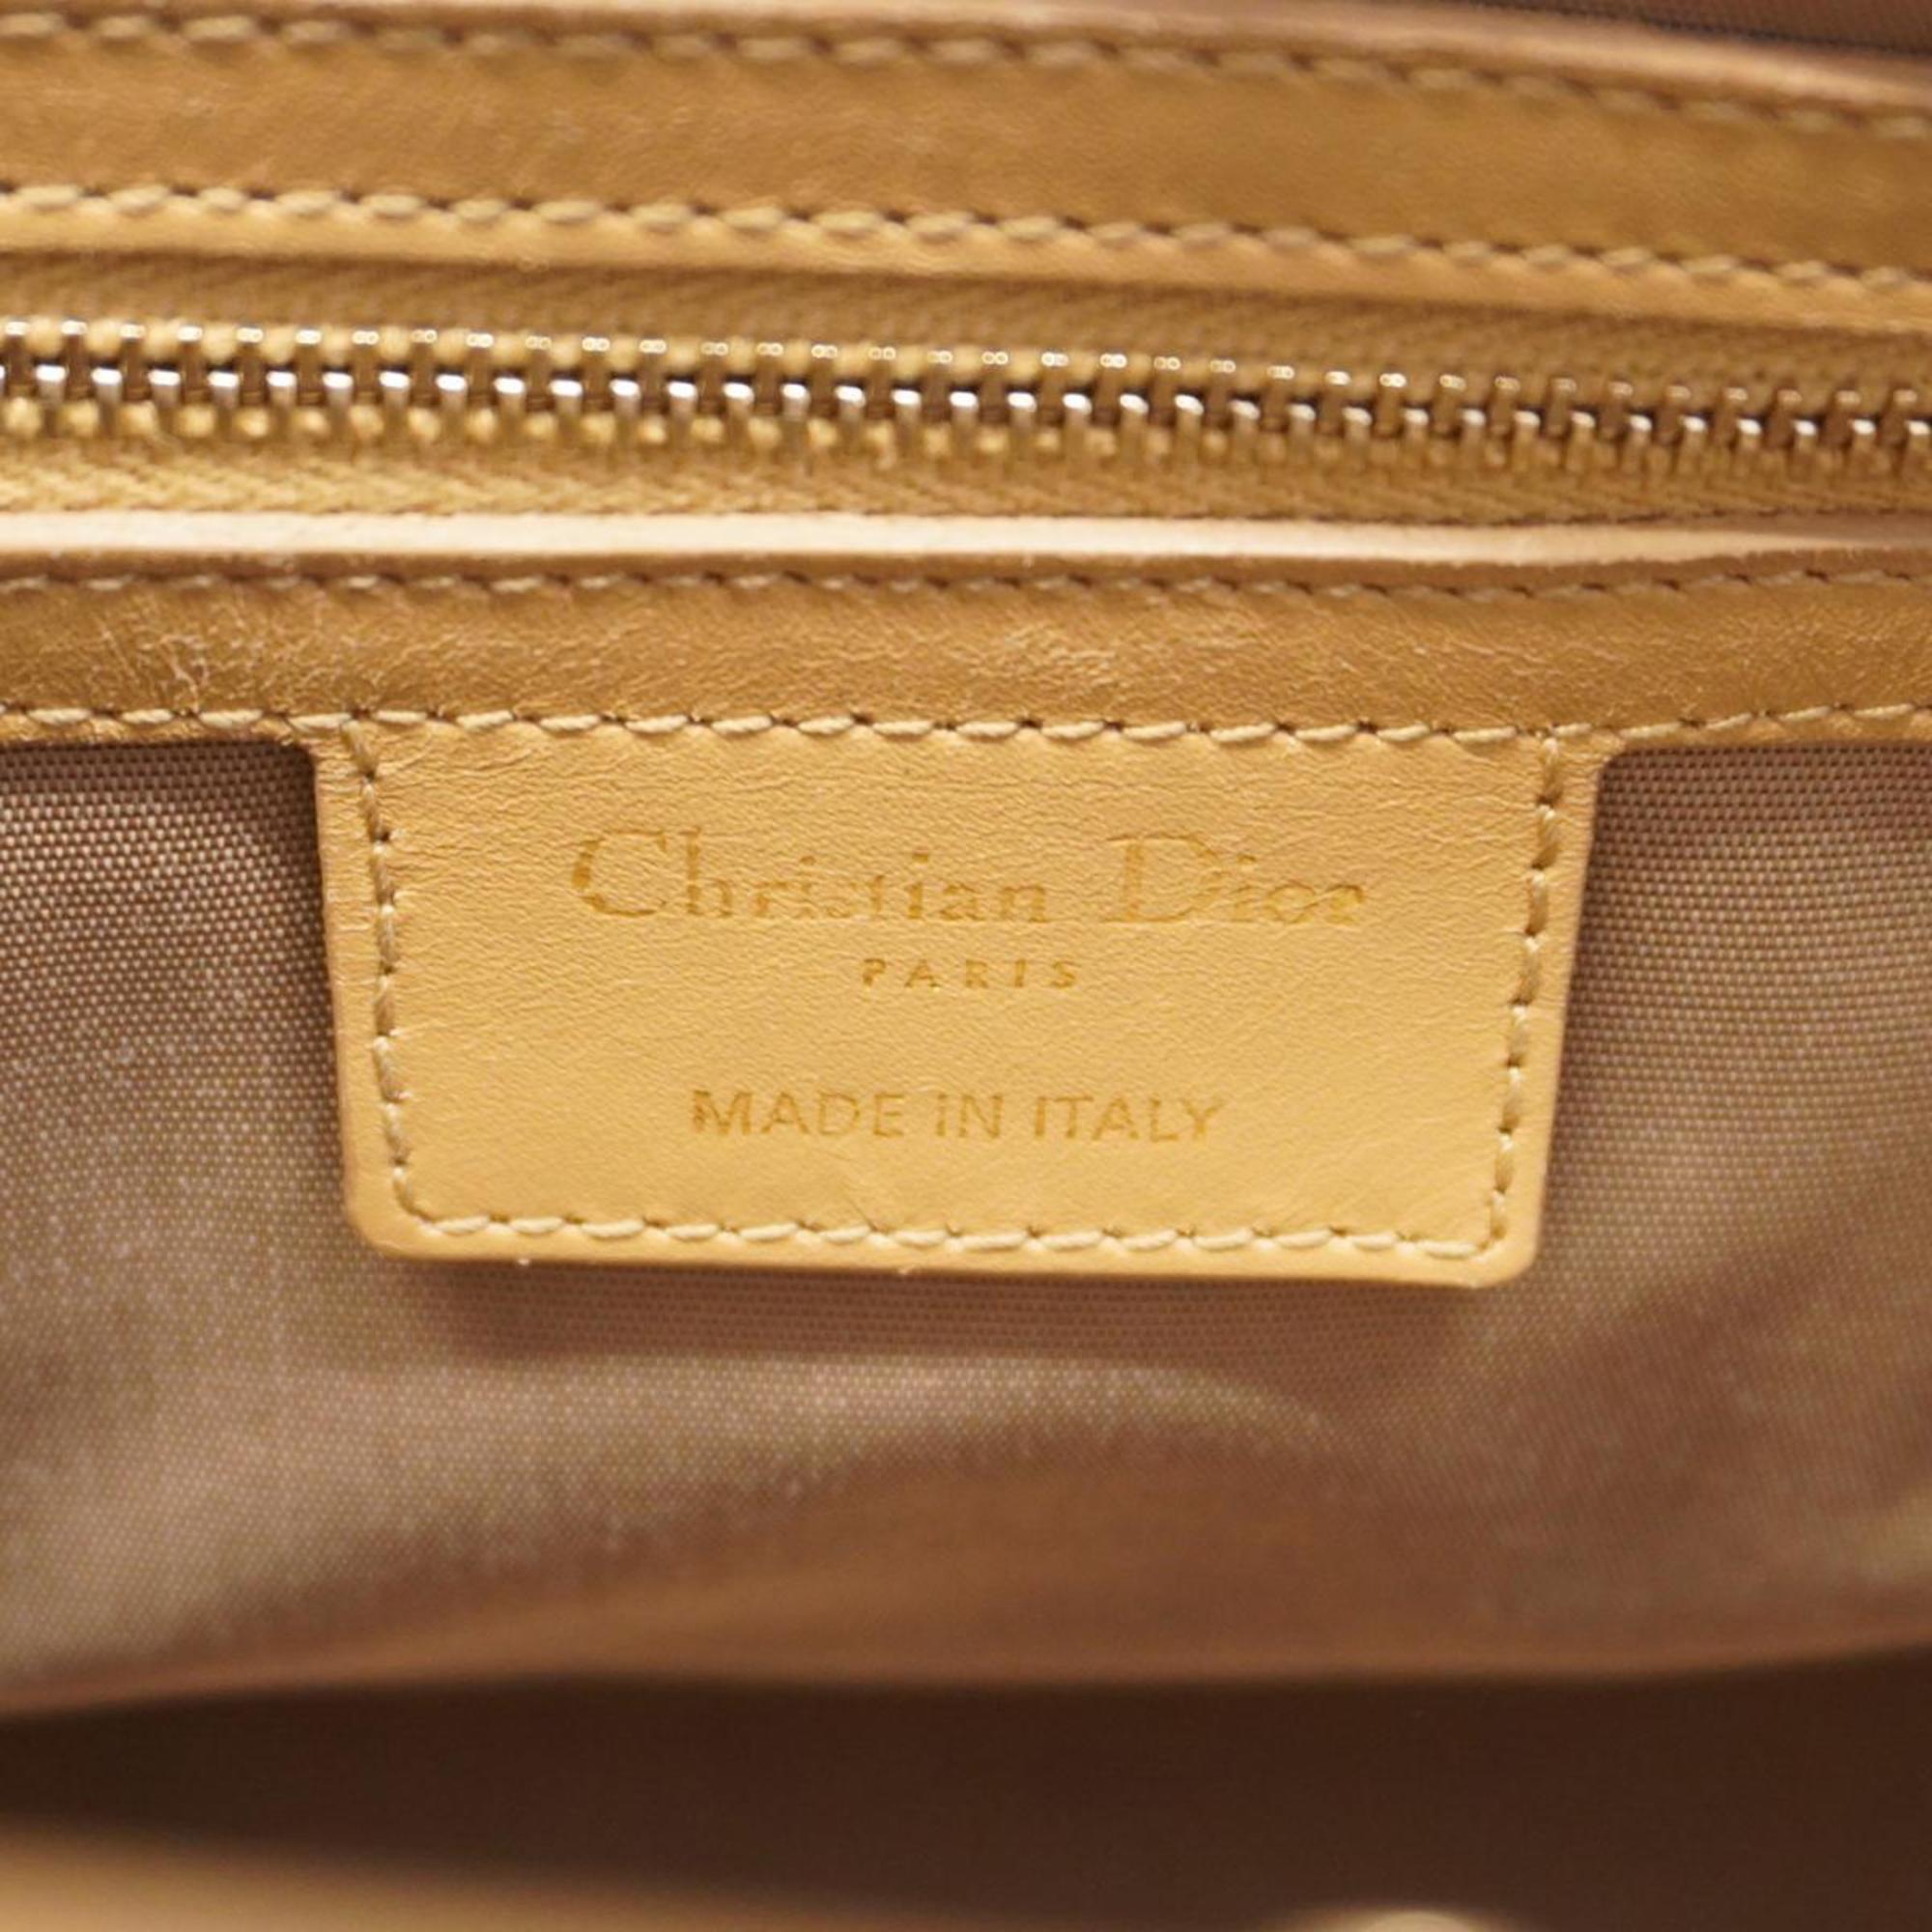 クリスチャン・ディオール(Christian Dior) クリスチャンディオール トートバッグ カナージュ  ベージュ シャンパン  レディース